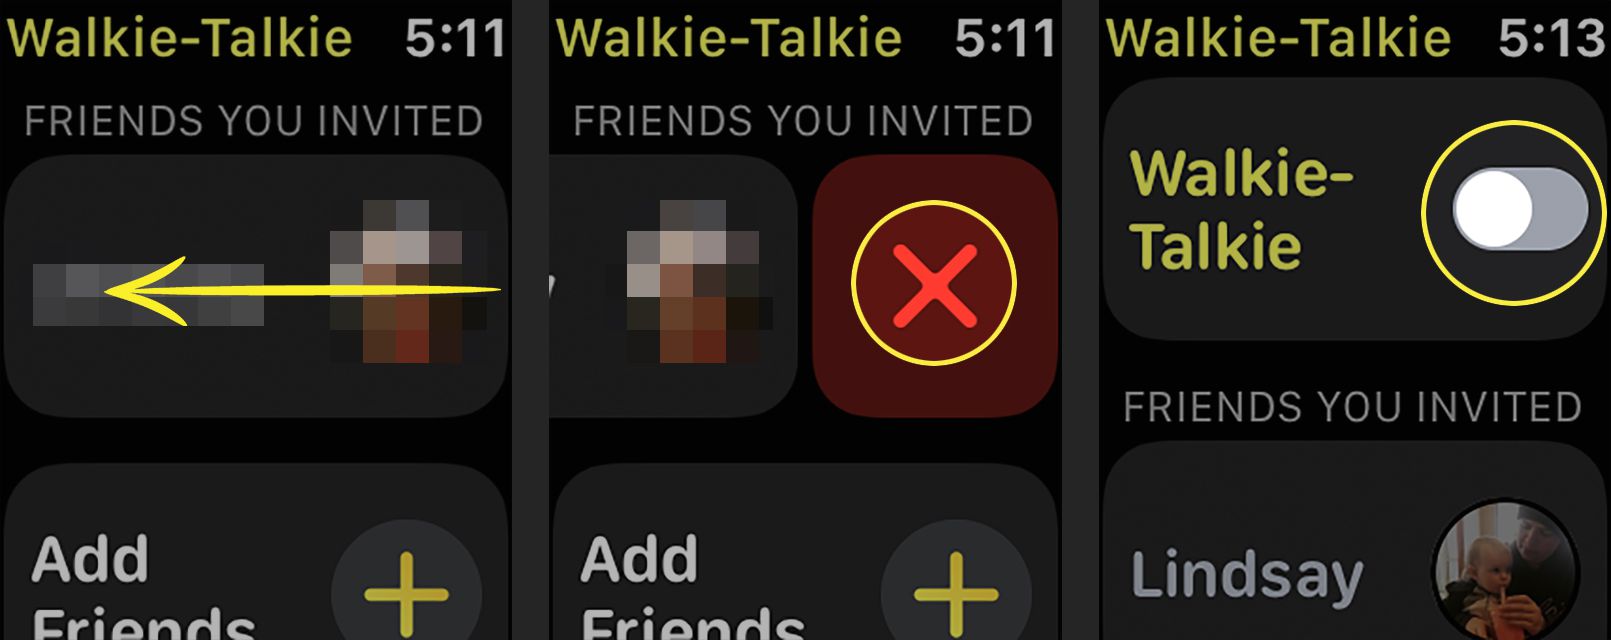 Odebrání kontaktu z aplikace Walkie-Talkie